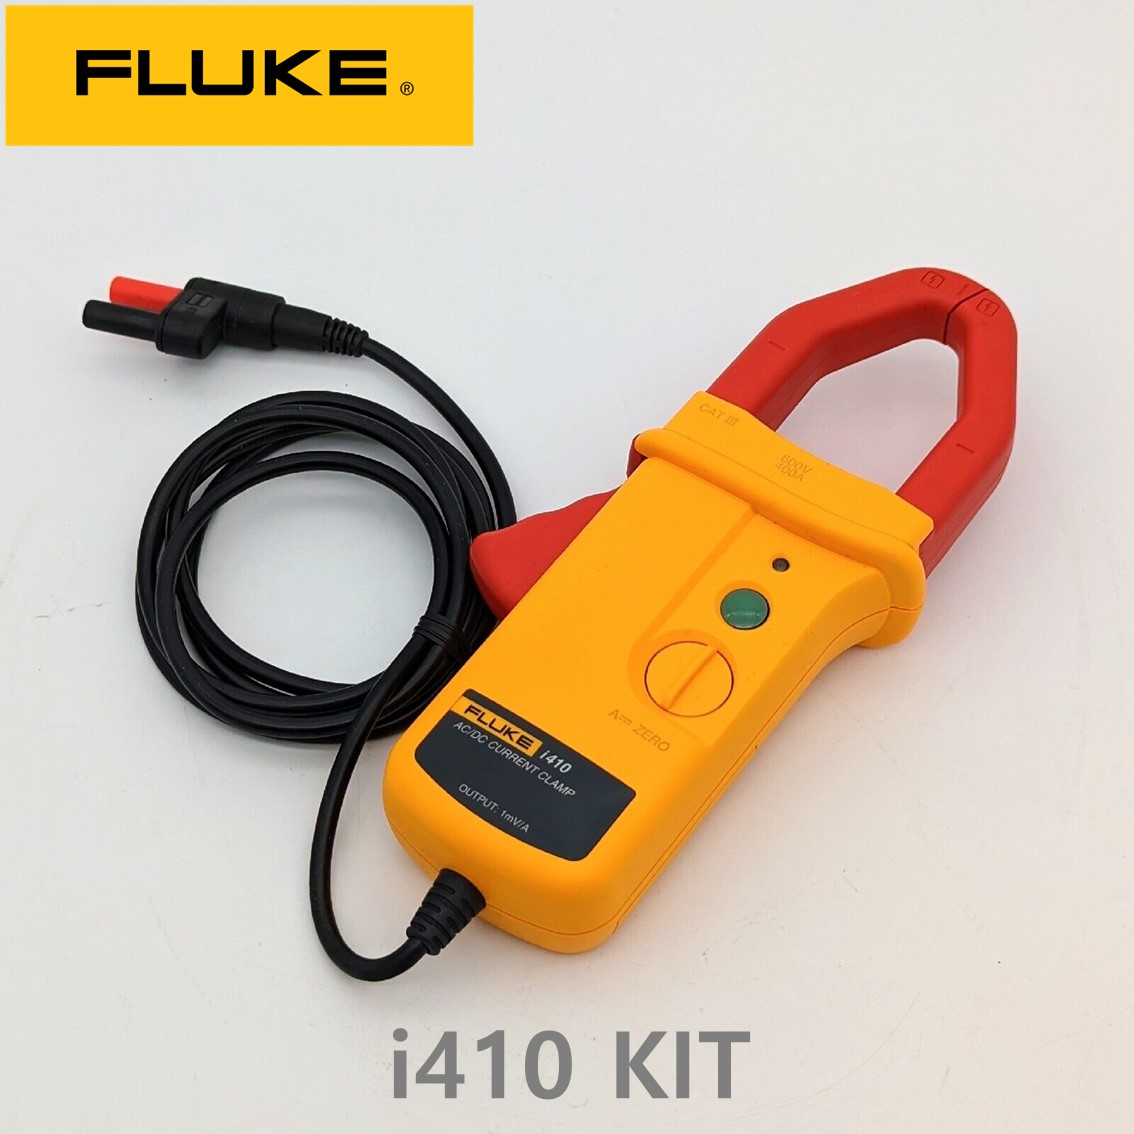 [ FLUKE i410 KIT ] 플루크 전류클램프 키트 (CASE포함) AC/DC 400A